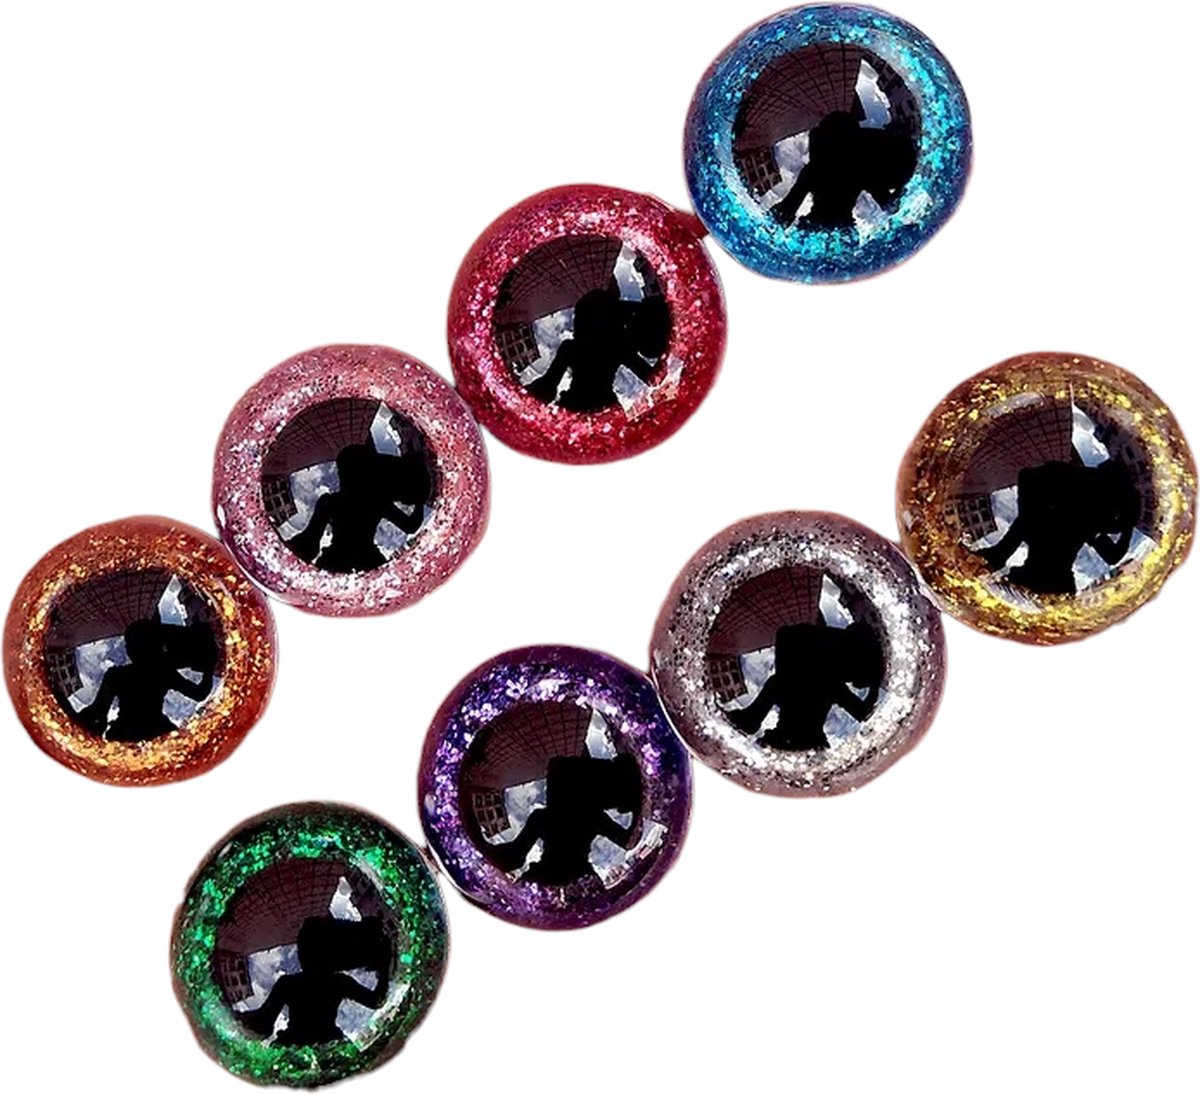 Veiligheidsoogjes - Glitter Oogjes - Knuffel oogjes - Beren oogjes - Met Sluitringen - 8 kleuren - 30ST - 16MM - Merkloos